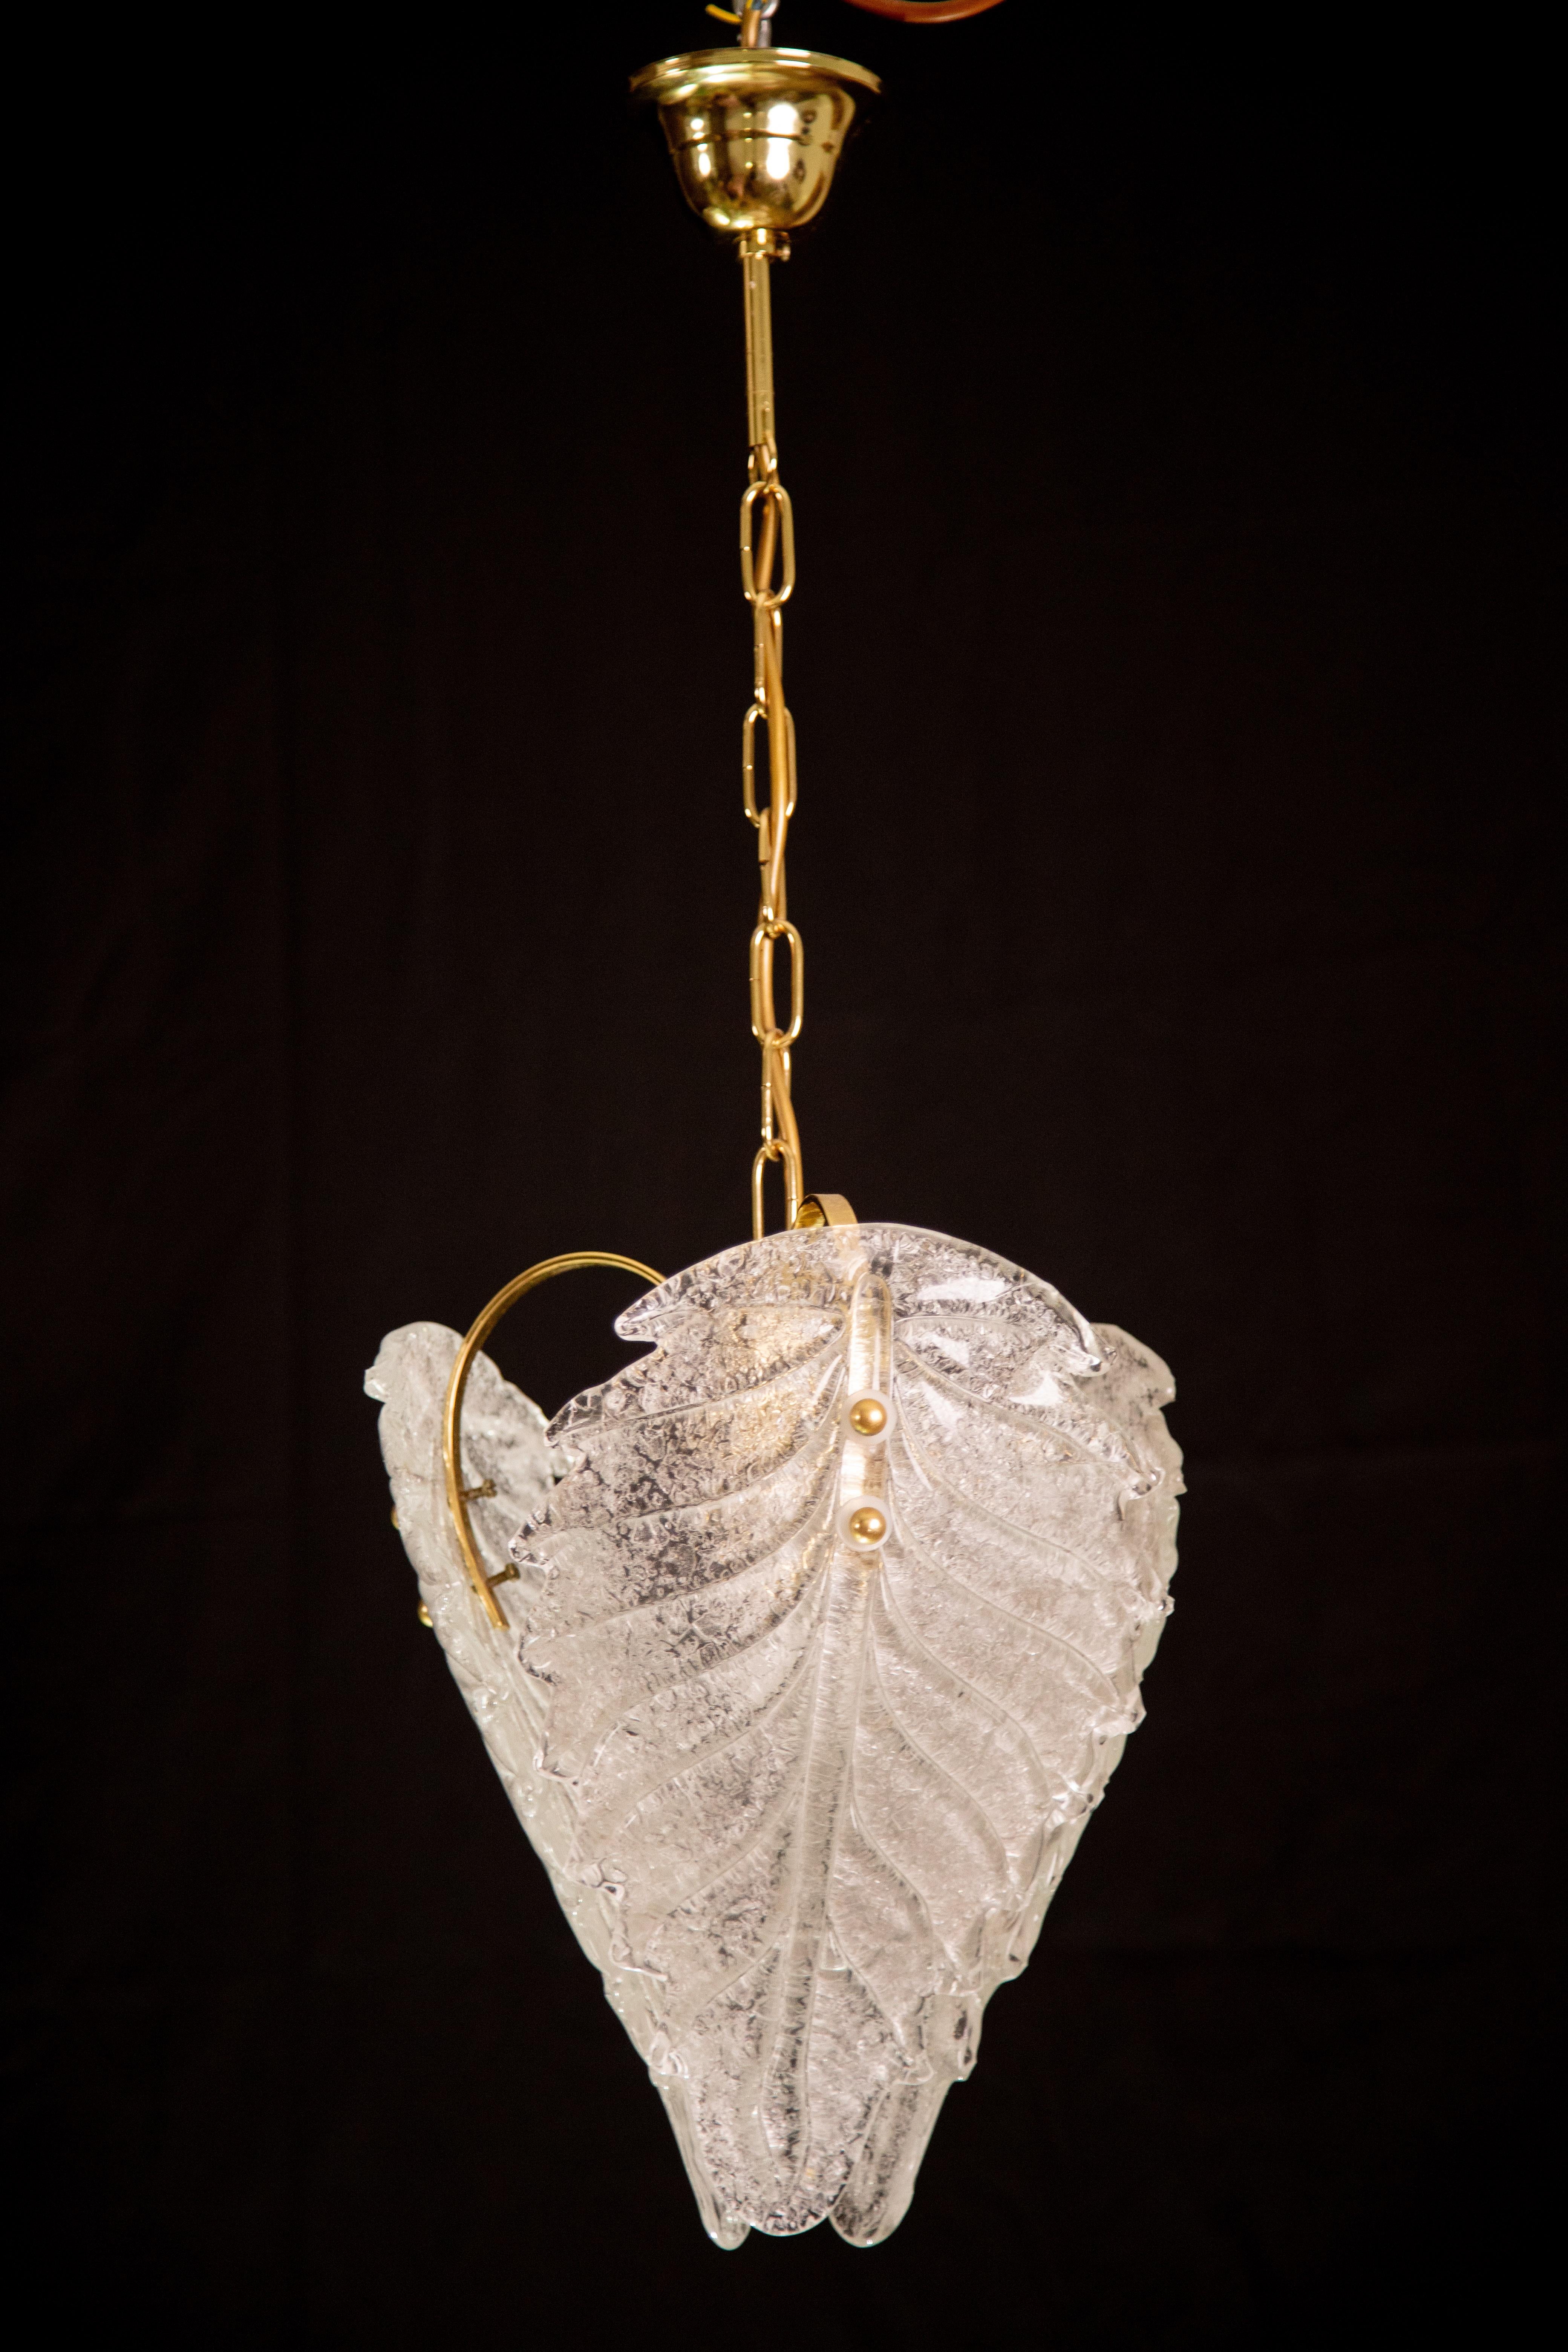 Murano-Kronleuchter geformt durch 3 große Blätter

Ära der 1970er Jahre.

Goldener Badewannenrahmen.

Ausgezeichneter Vintage-Zustand